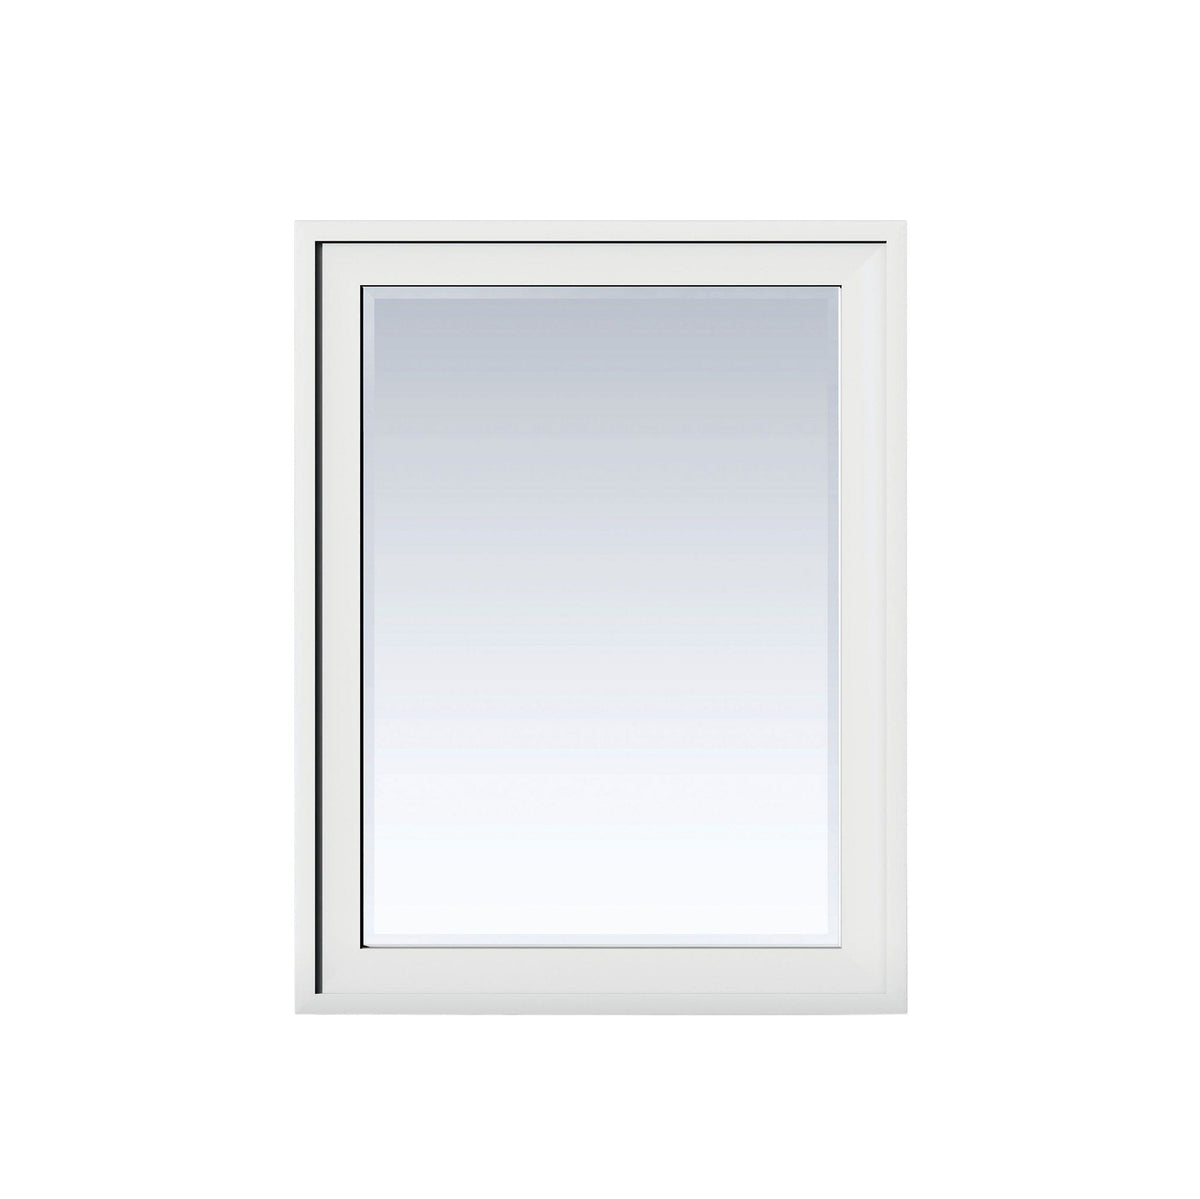 30" Addison Rectangular Mirror, Glossy White